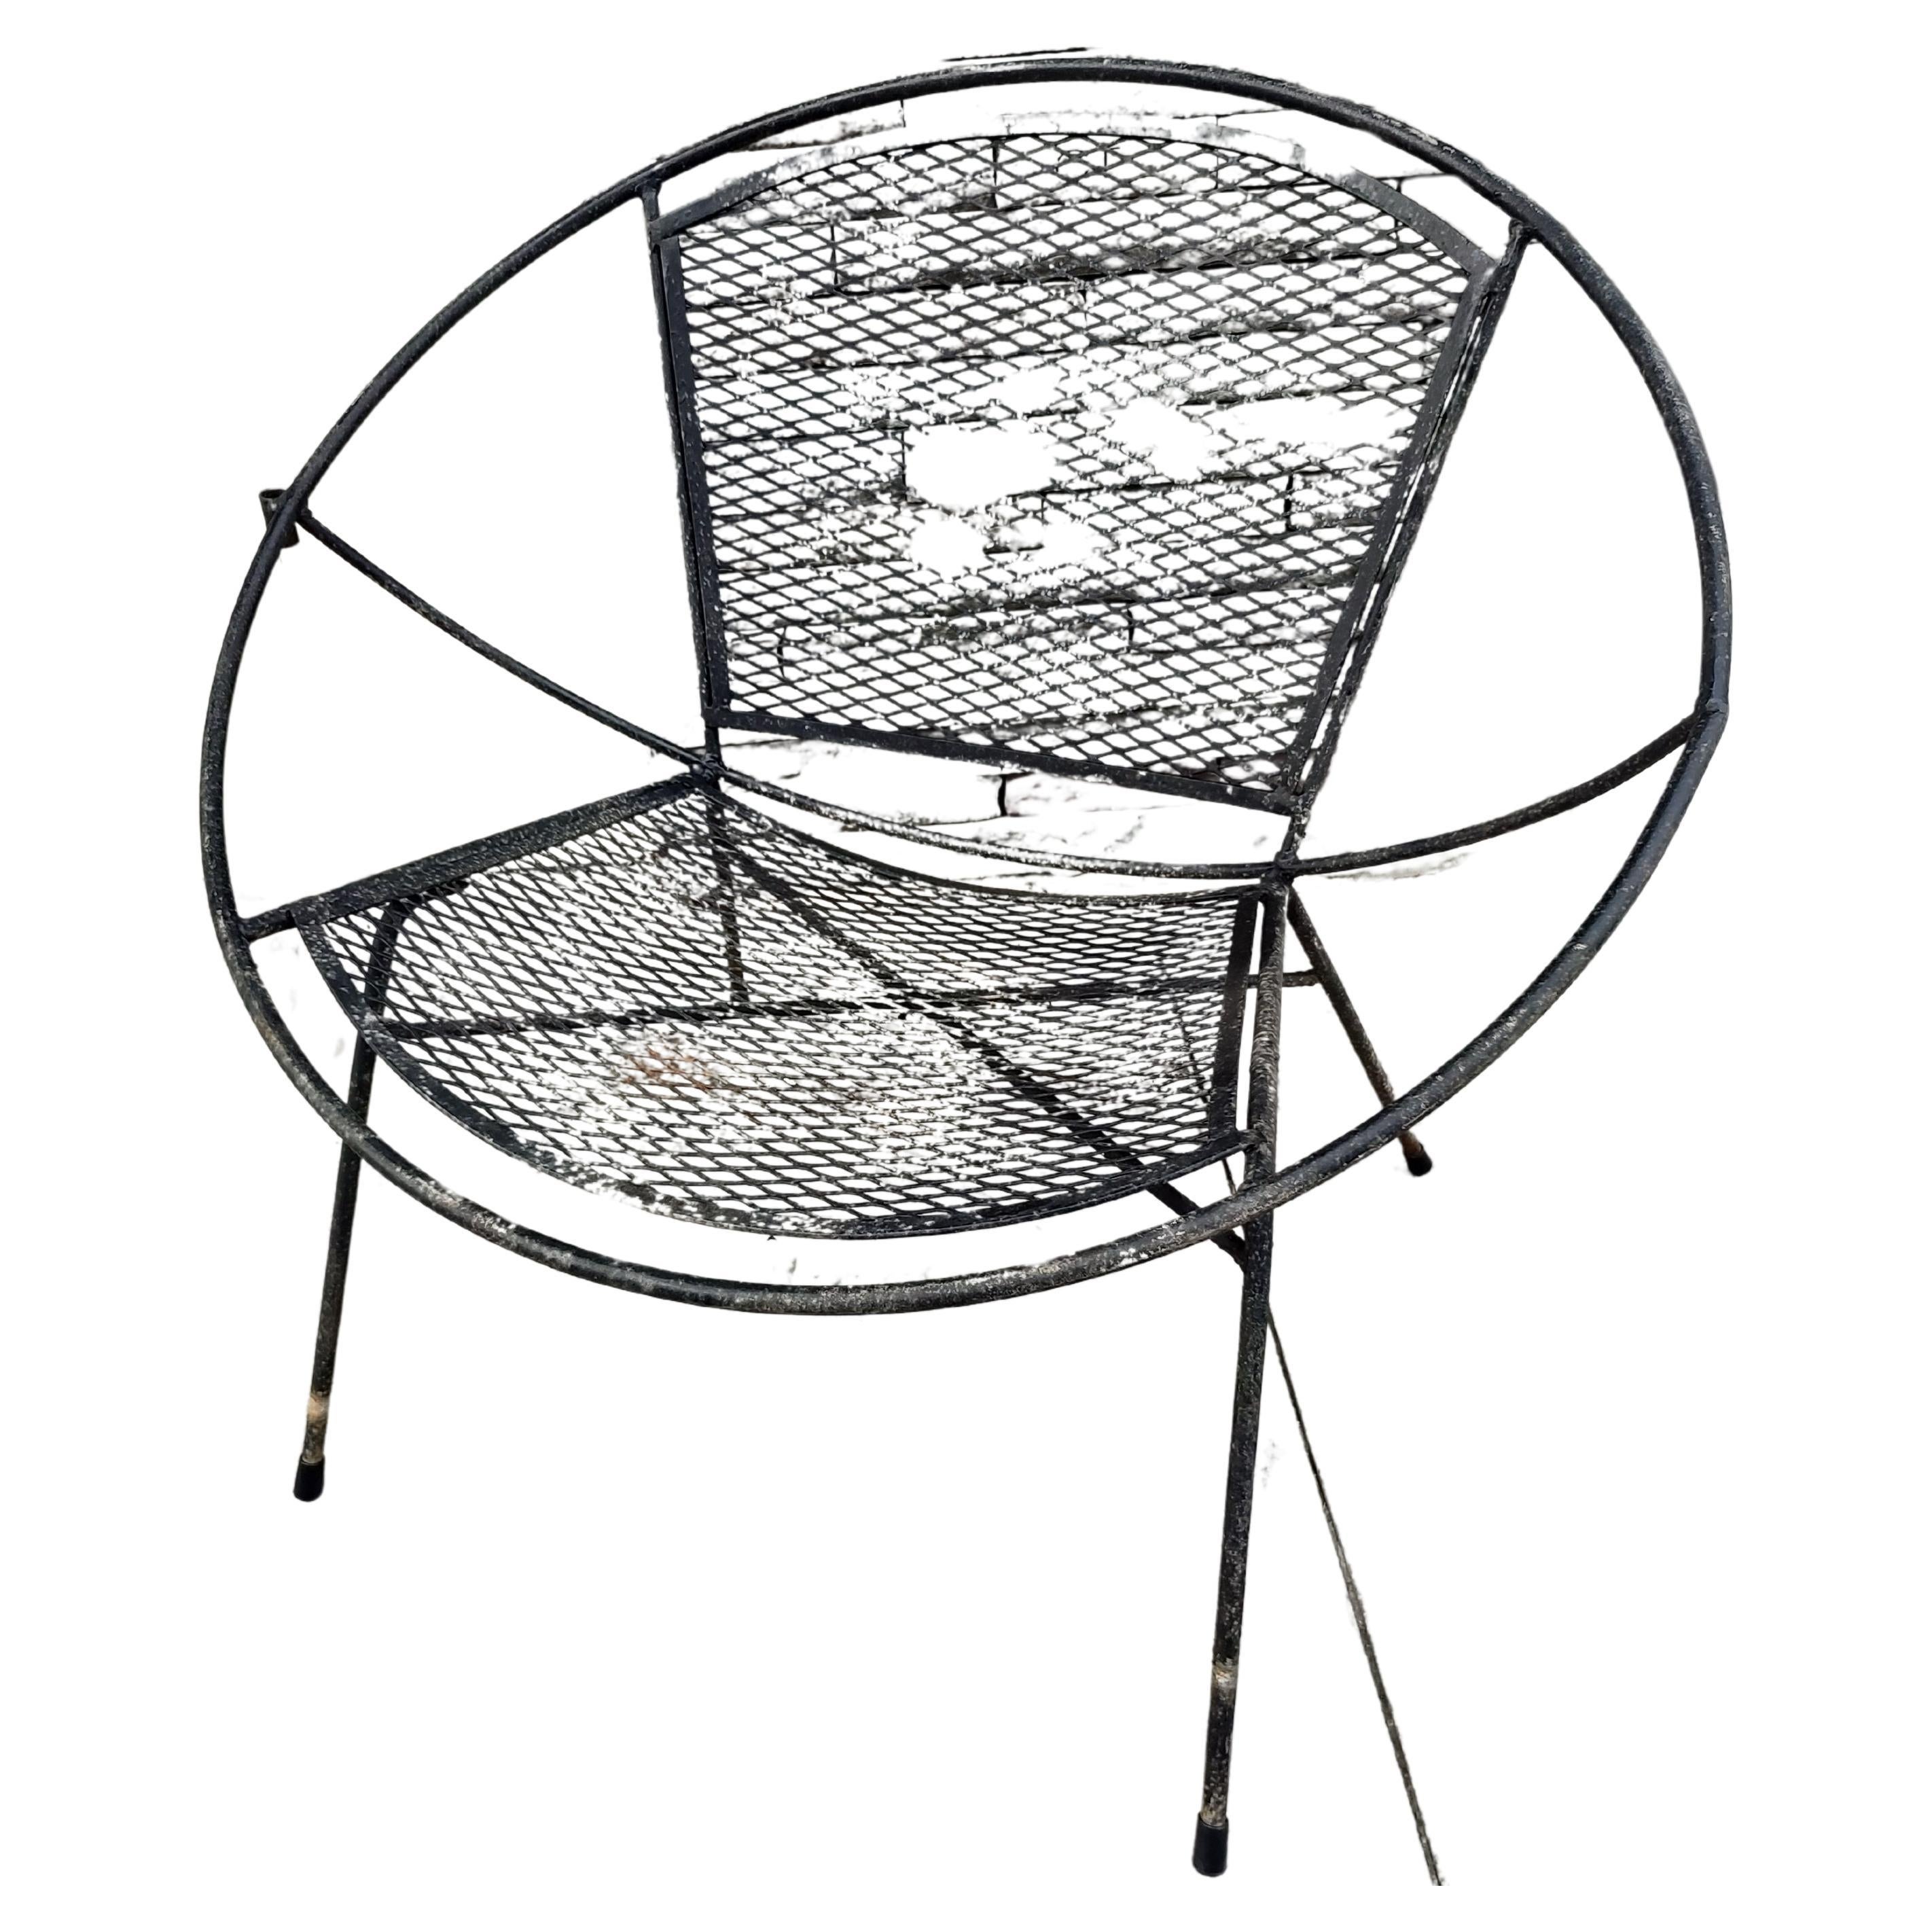 Fabuleux fauteuil en fer conçu par Maurizio Tempestini pour Salterini vers 1955. En très bon état, nécessitant un travail de pulvérisation. Nouveaux patins de pieds en plastique. Possibilité d'envoyer cette chaise par colis postal.